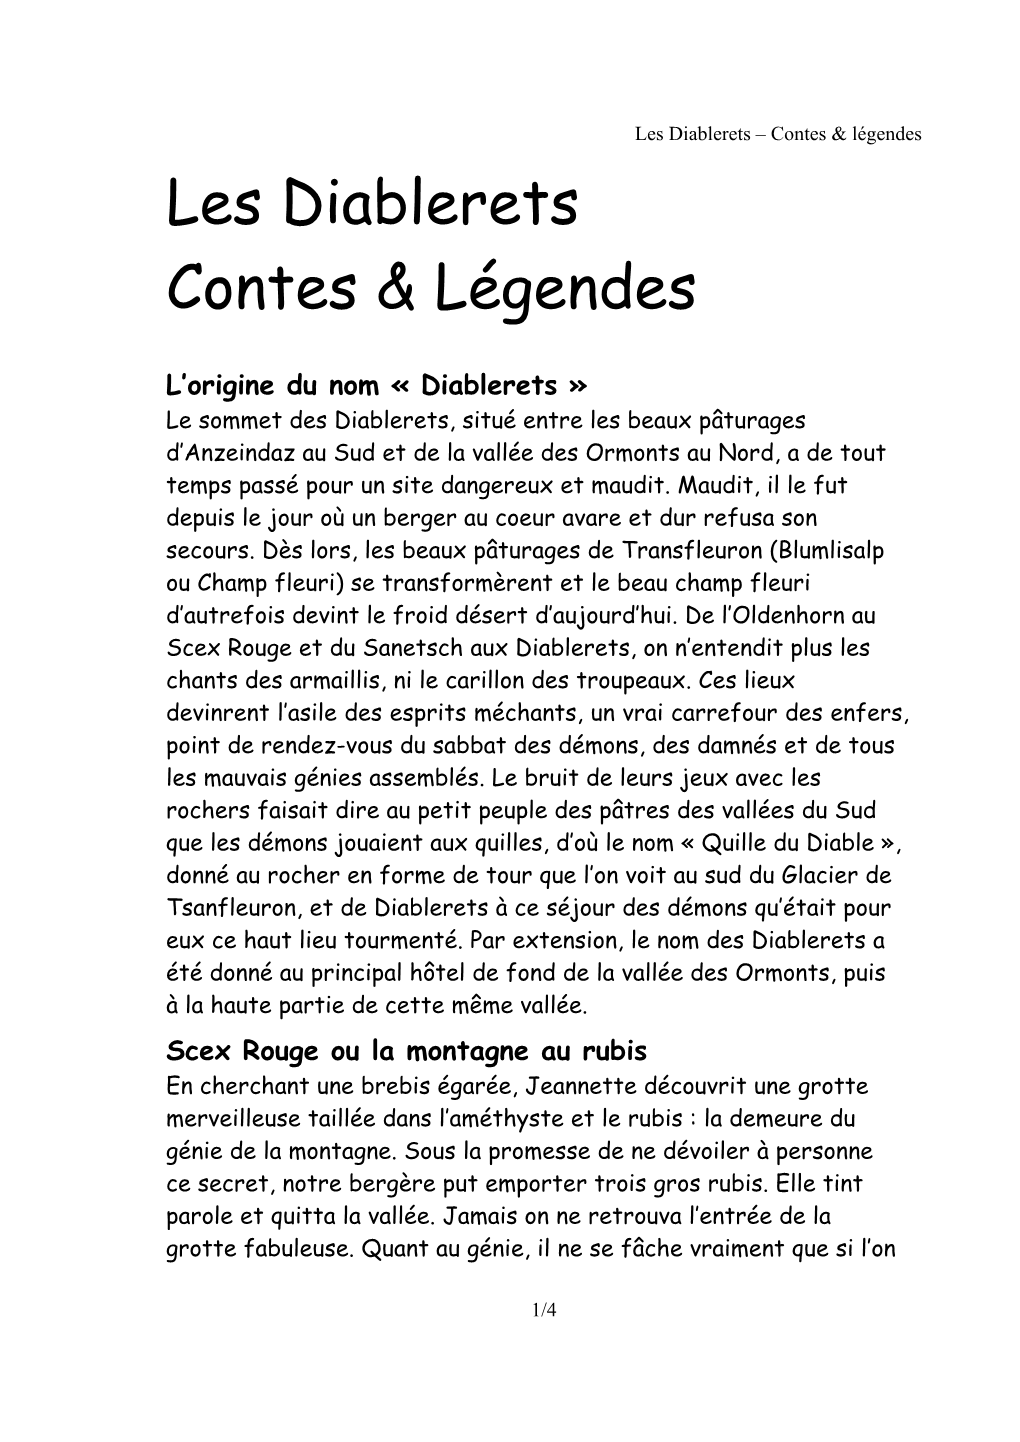 Les Diablerets Contes & Légendes